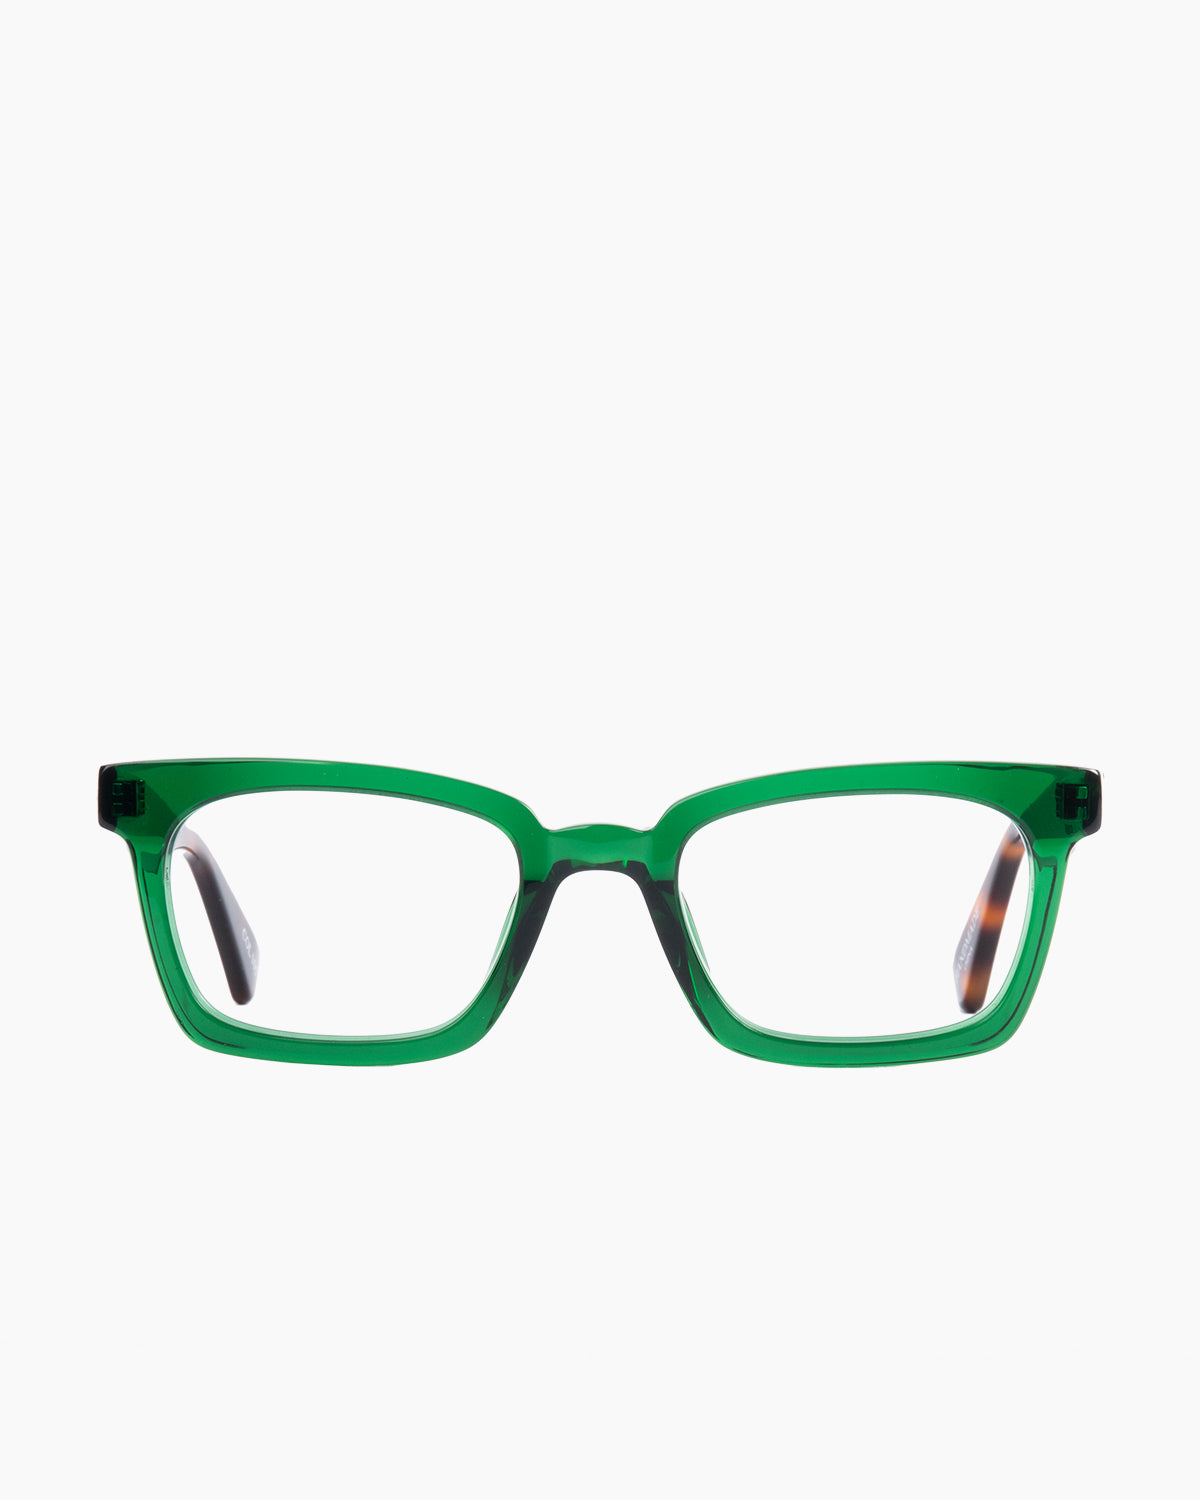 Evolve - Como - 105 | glasses bar